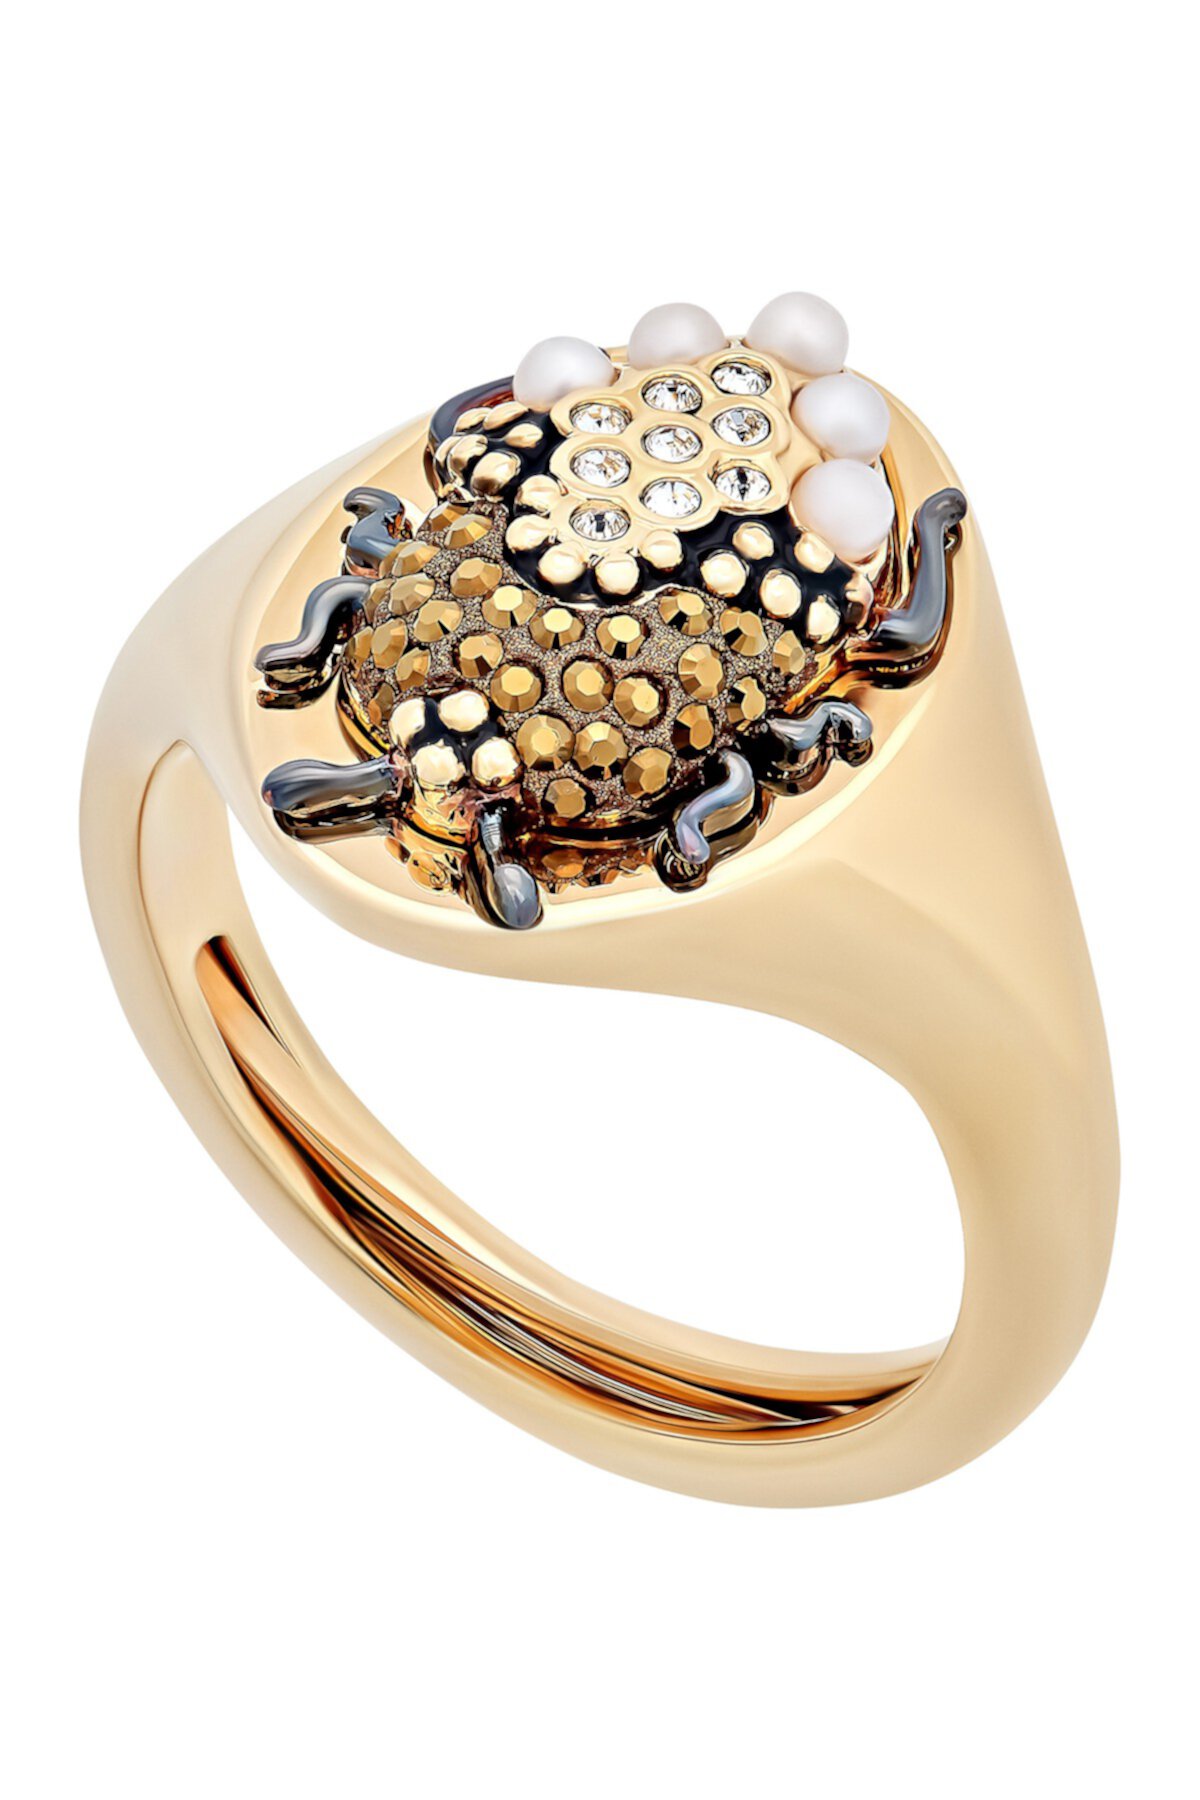 Коктейльное кольцо с магнитным паве и кристаллами Сваровски с имитацией жемчуга Скарабей Swarovski